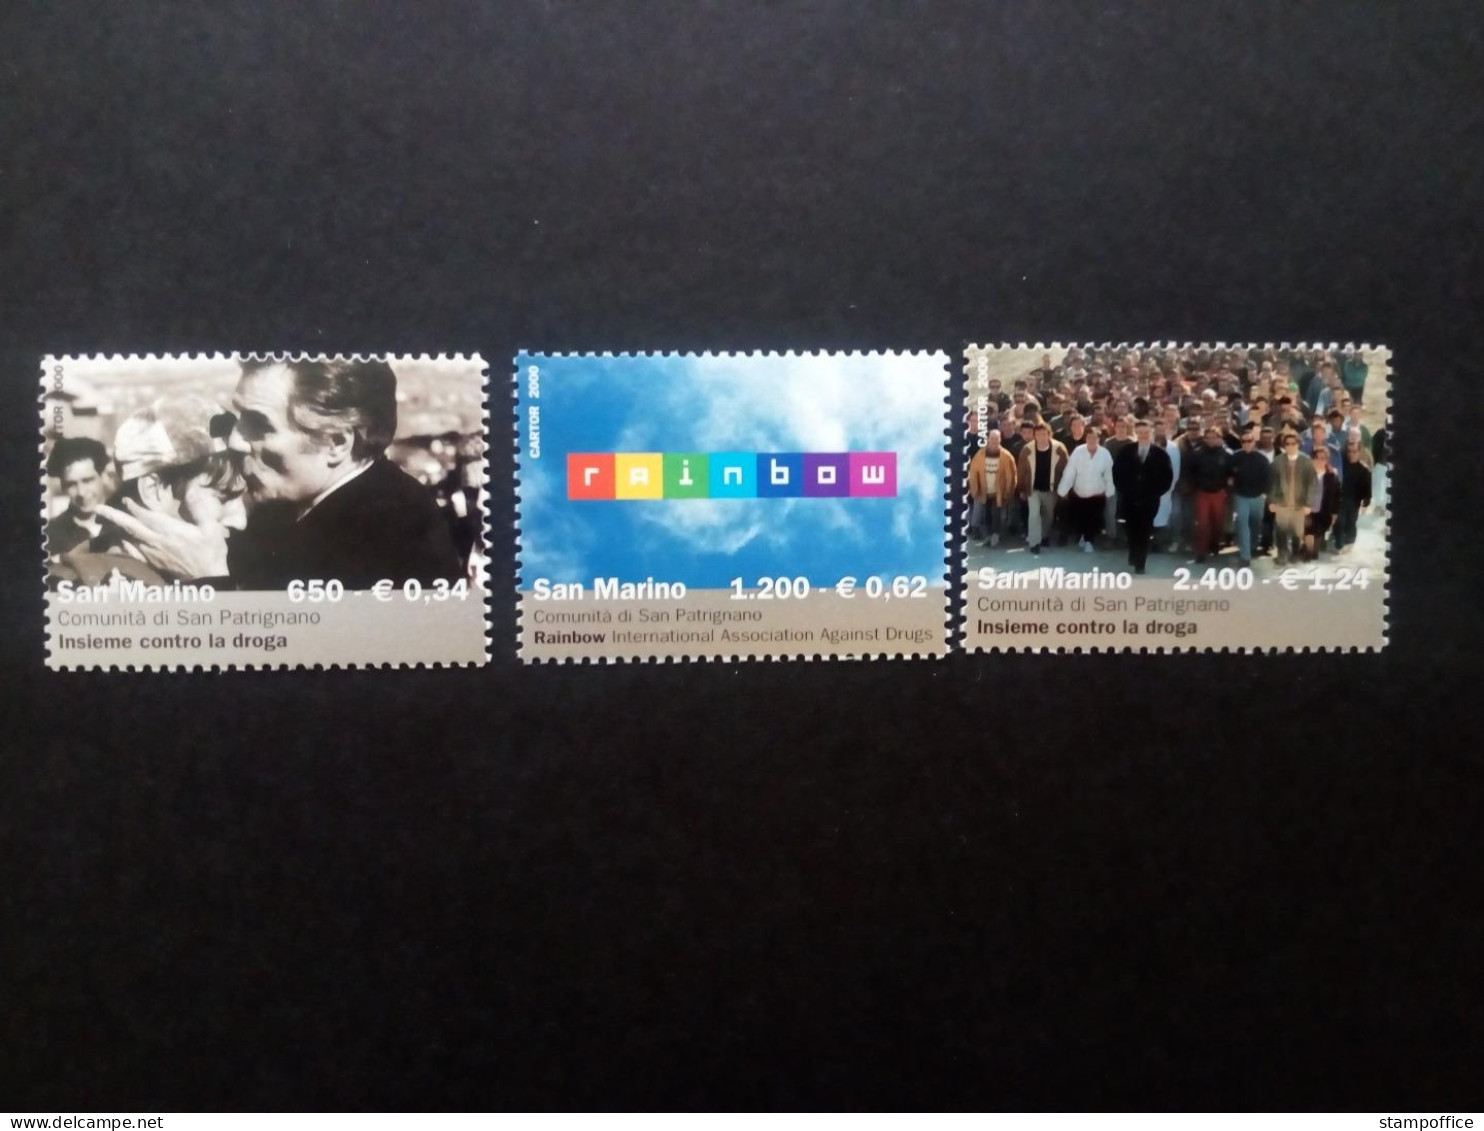 SAN MARINO MI-NR. 1890-1892 POSTFRISCH(MINT) ANTI-DROGEN 2000 - Unused Stamps